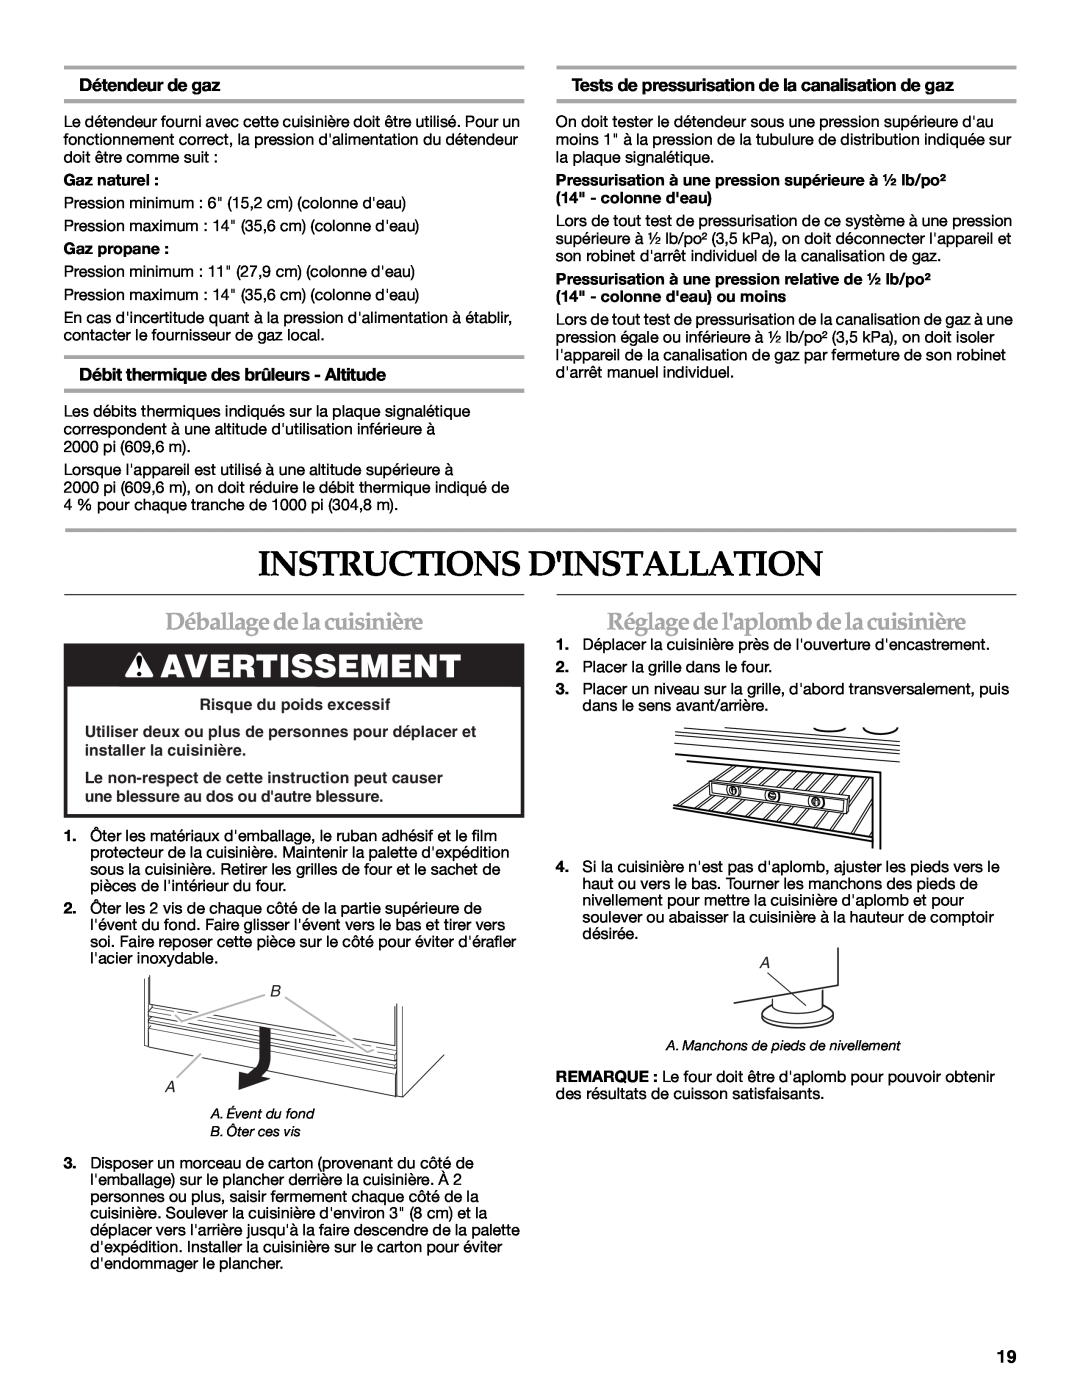 KitchenAid 9759536B Instructions Dinstallation, Déballage de la cuisinière, Réglage de laplomb de la cuisinière 